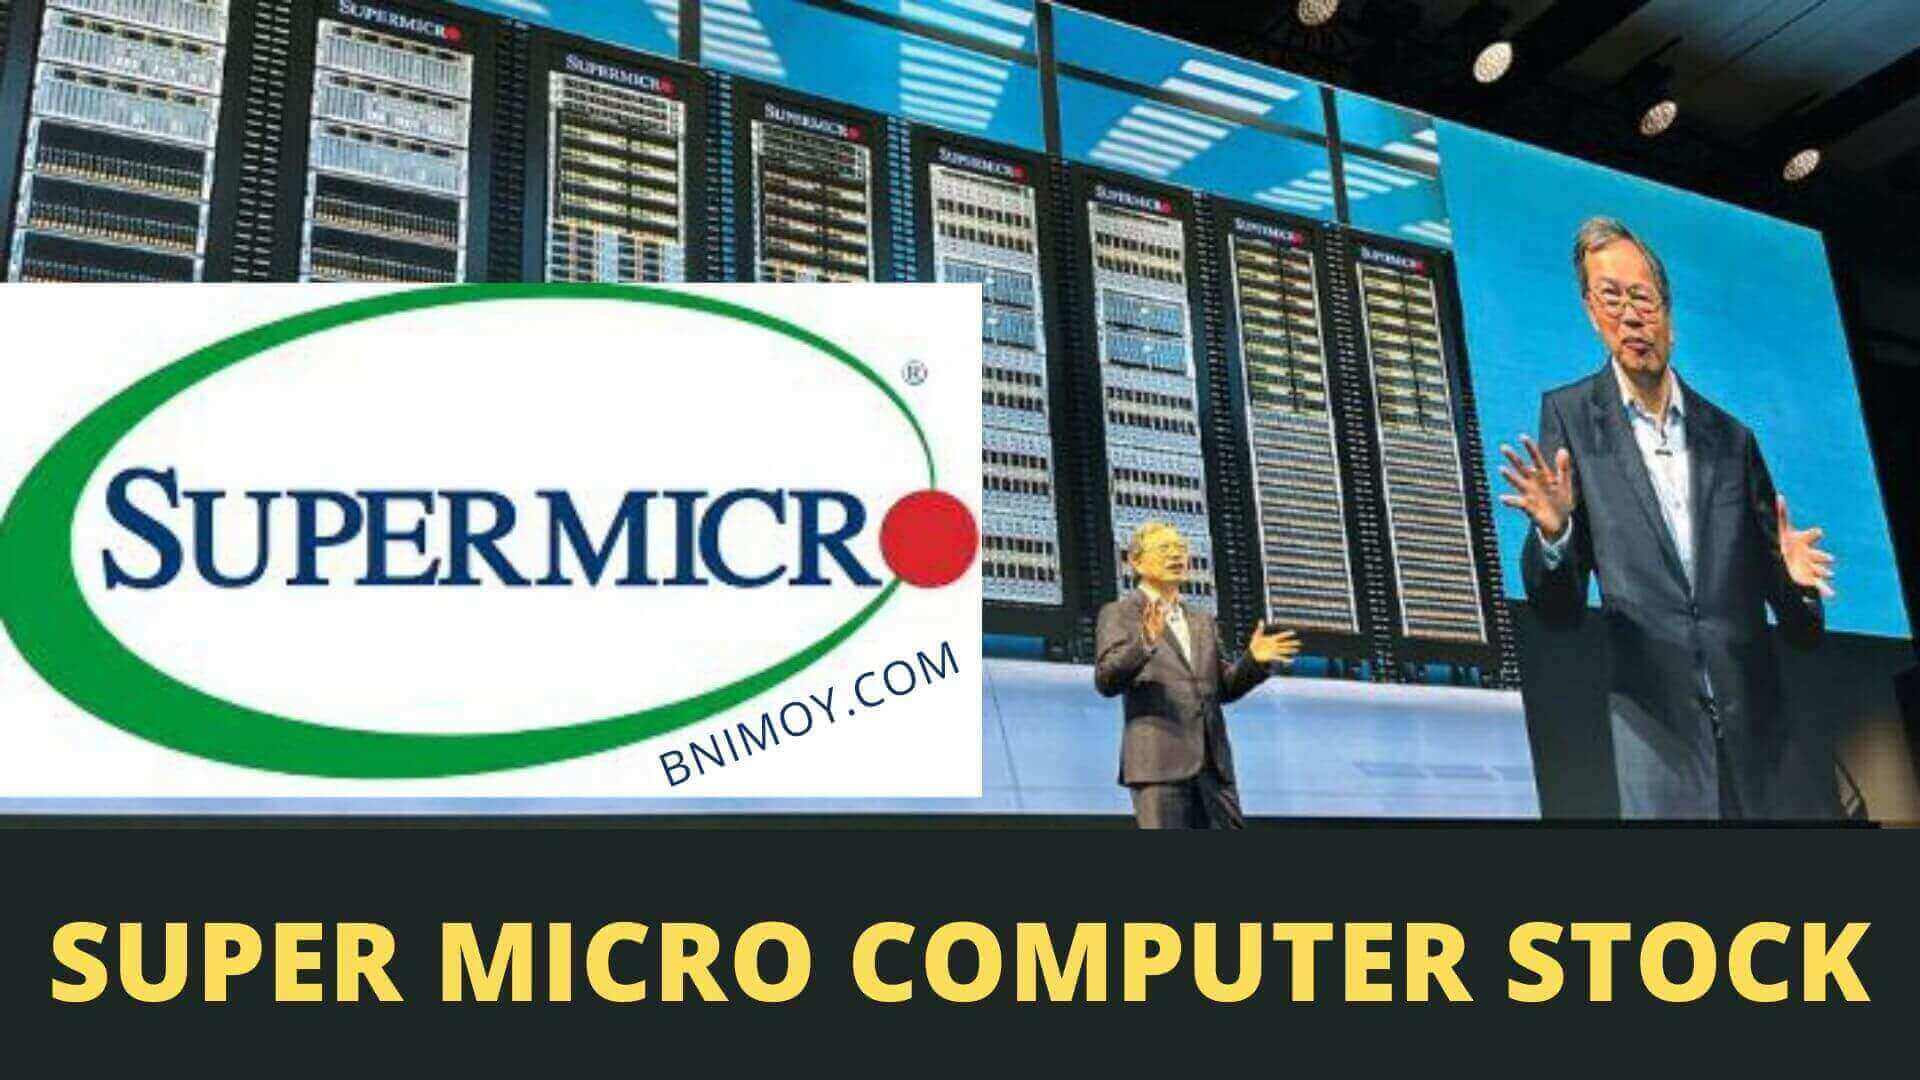 Super Micro Computer, Super Micro Computer stock, super micro computer news,